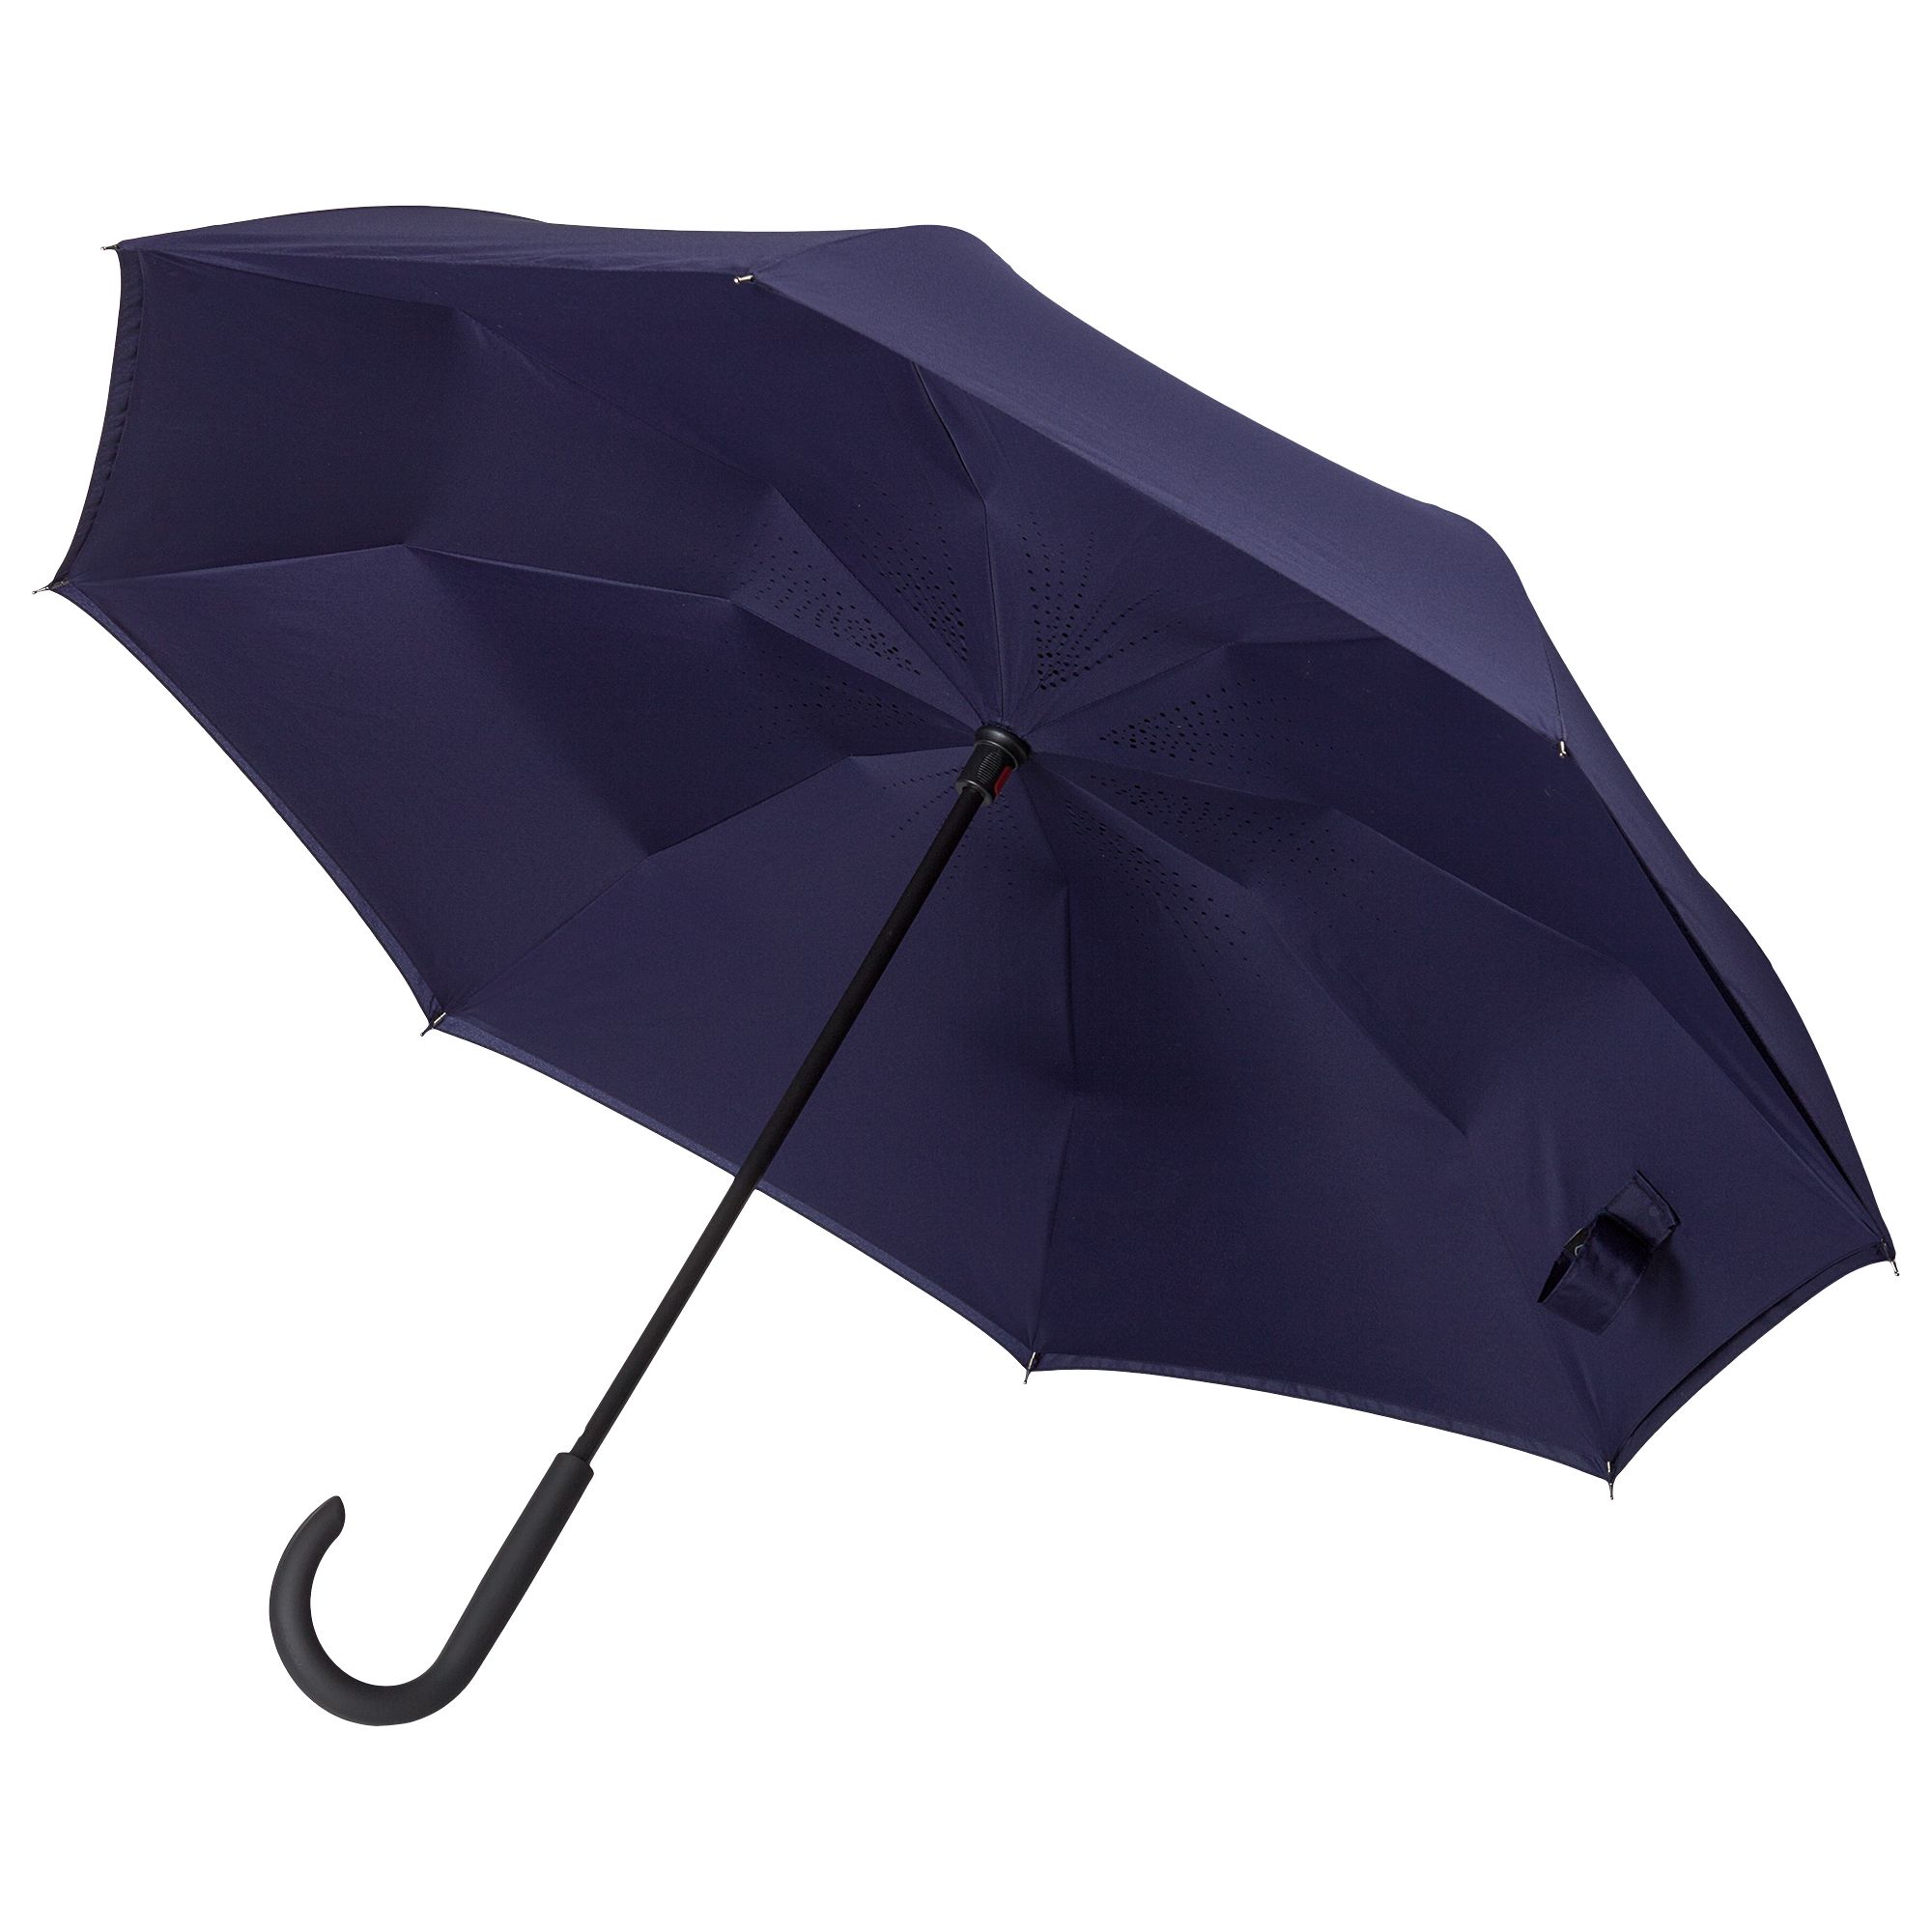 Где купить зонтик. Зонт Xiaomi Mijia zds01xm. Зонт Xiaomi Mijia Automatic Umbrella (zds01xm). Зонт Xiaomi jdv4002ty, мужской. Зонт mi Automatic Umbrella zds01xm.